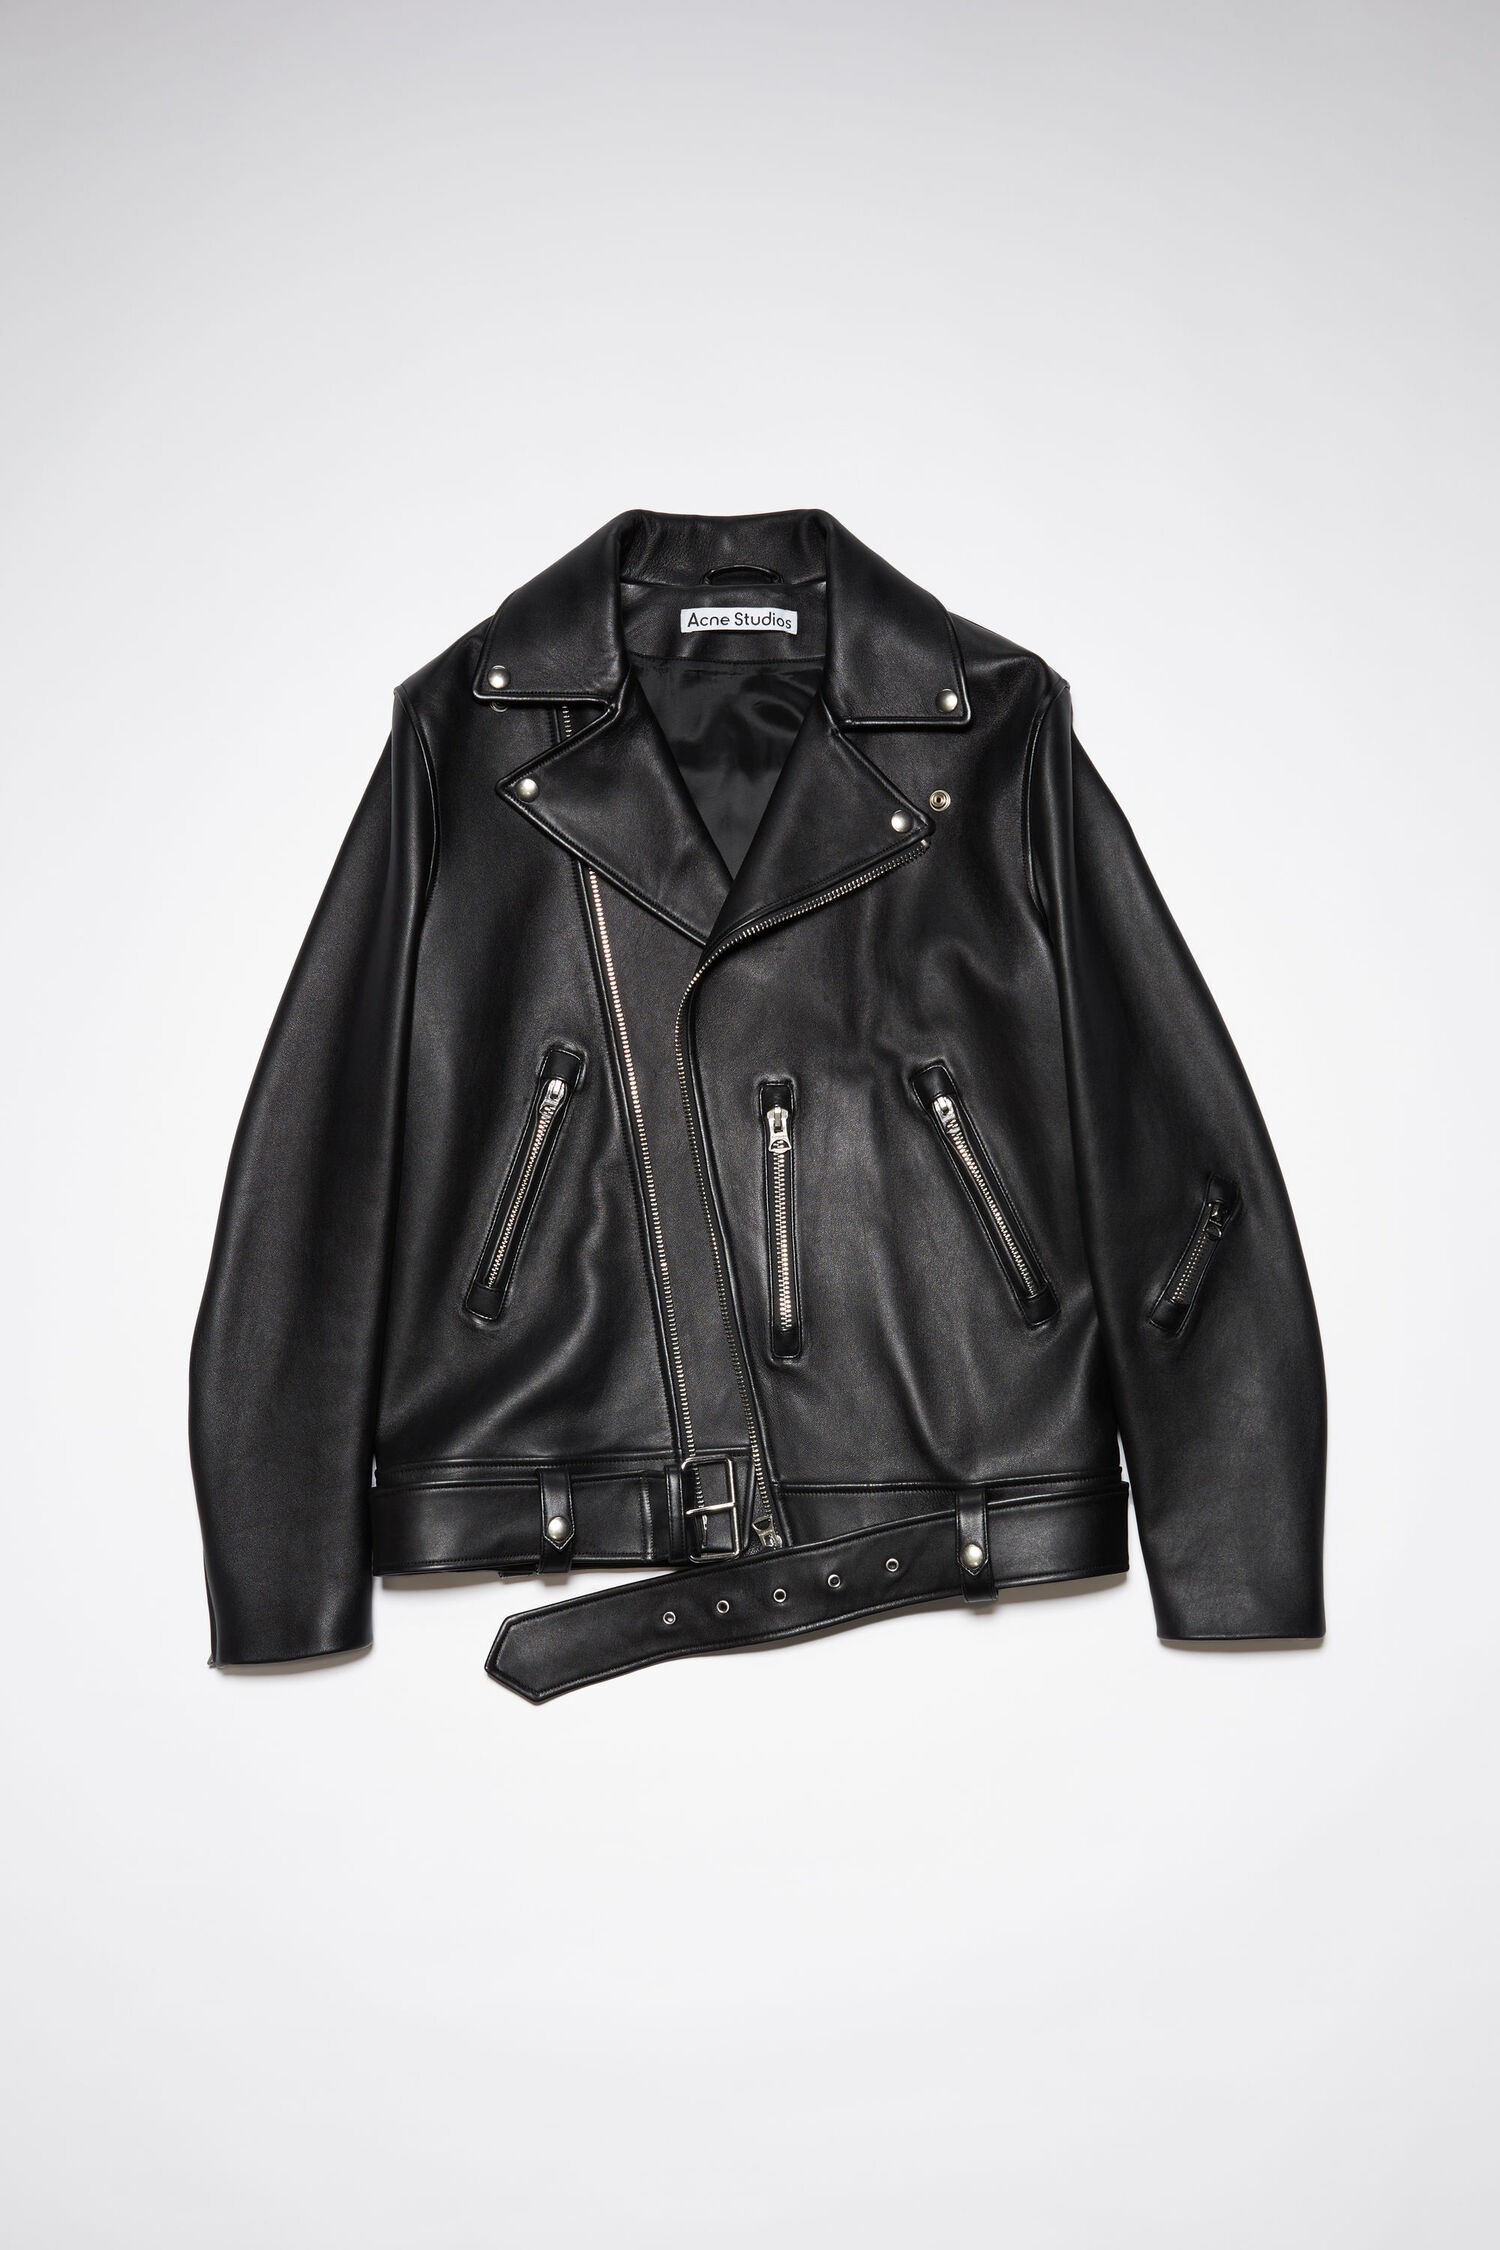 Louis Vuitton's £70k Crocodile Jacket  Leather jacket men style, Best  leather jackets, Leather jacket men